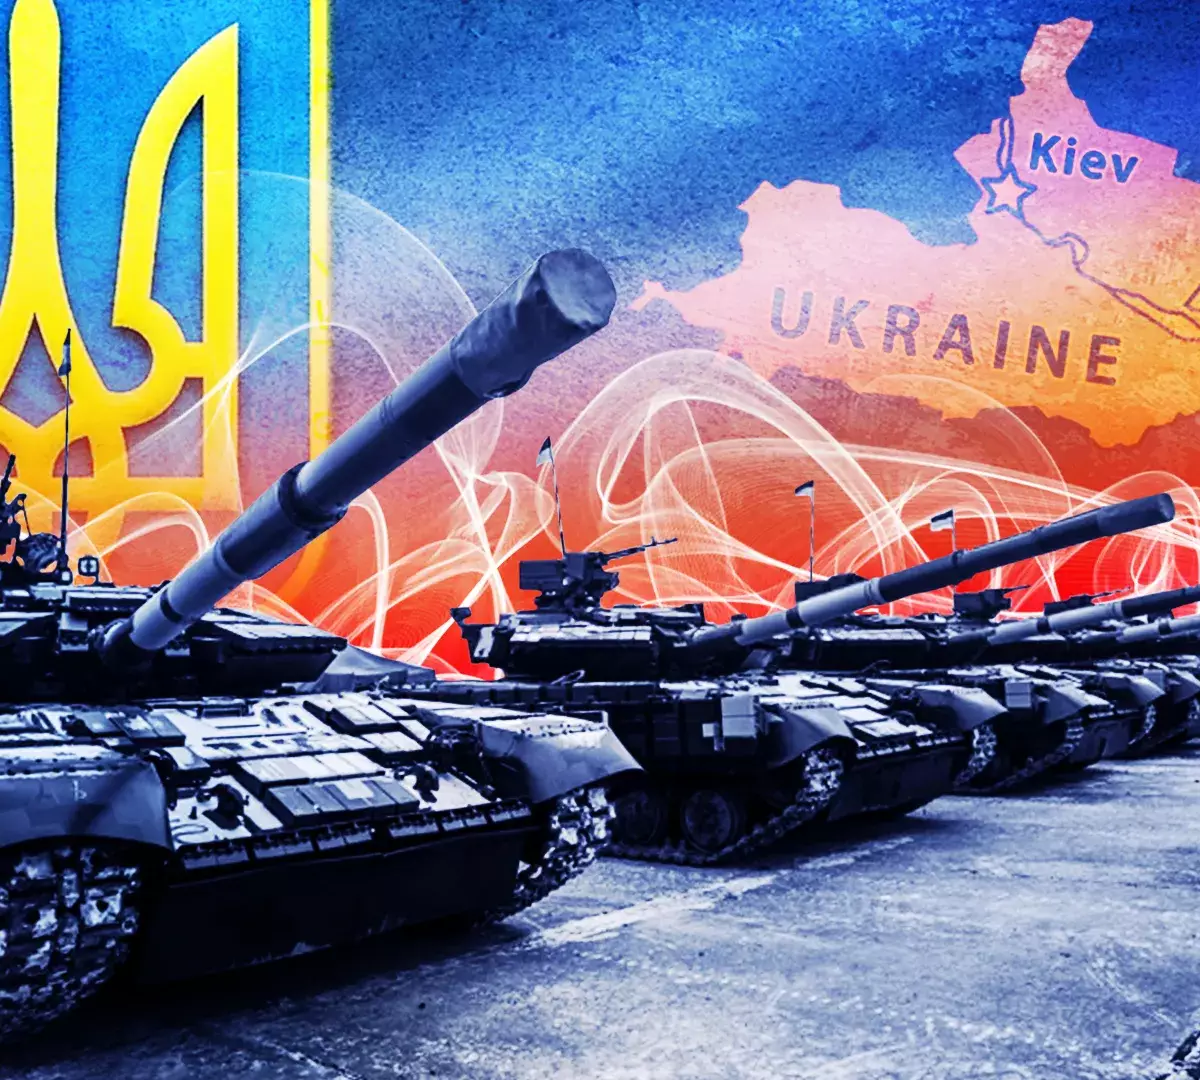 Запад против РФ: разведка США помогала готовить наступление под Харьковом